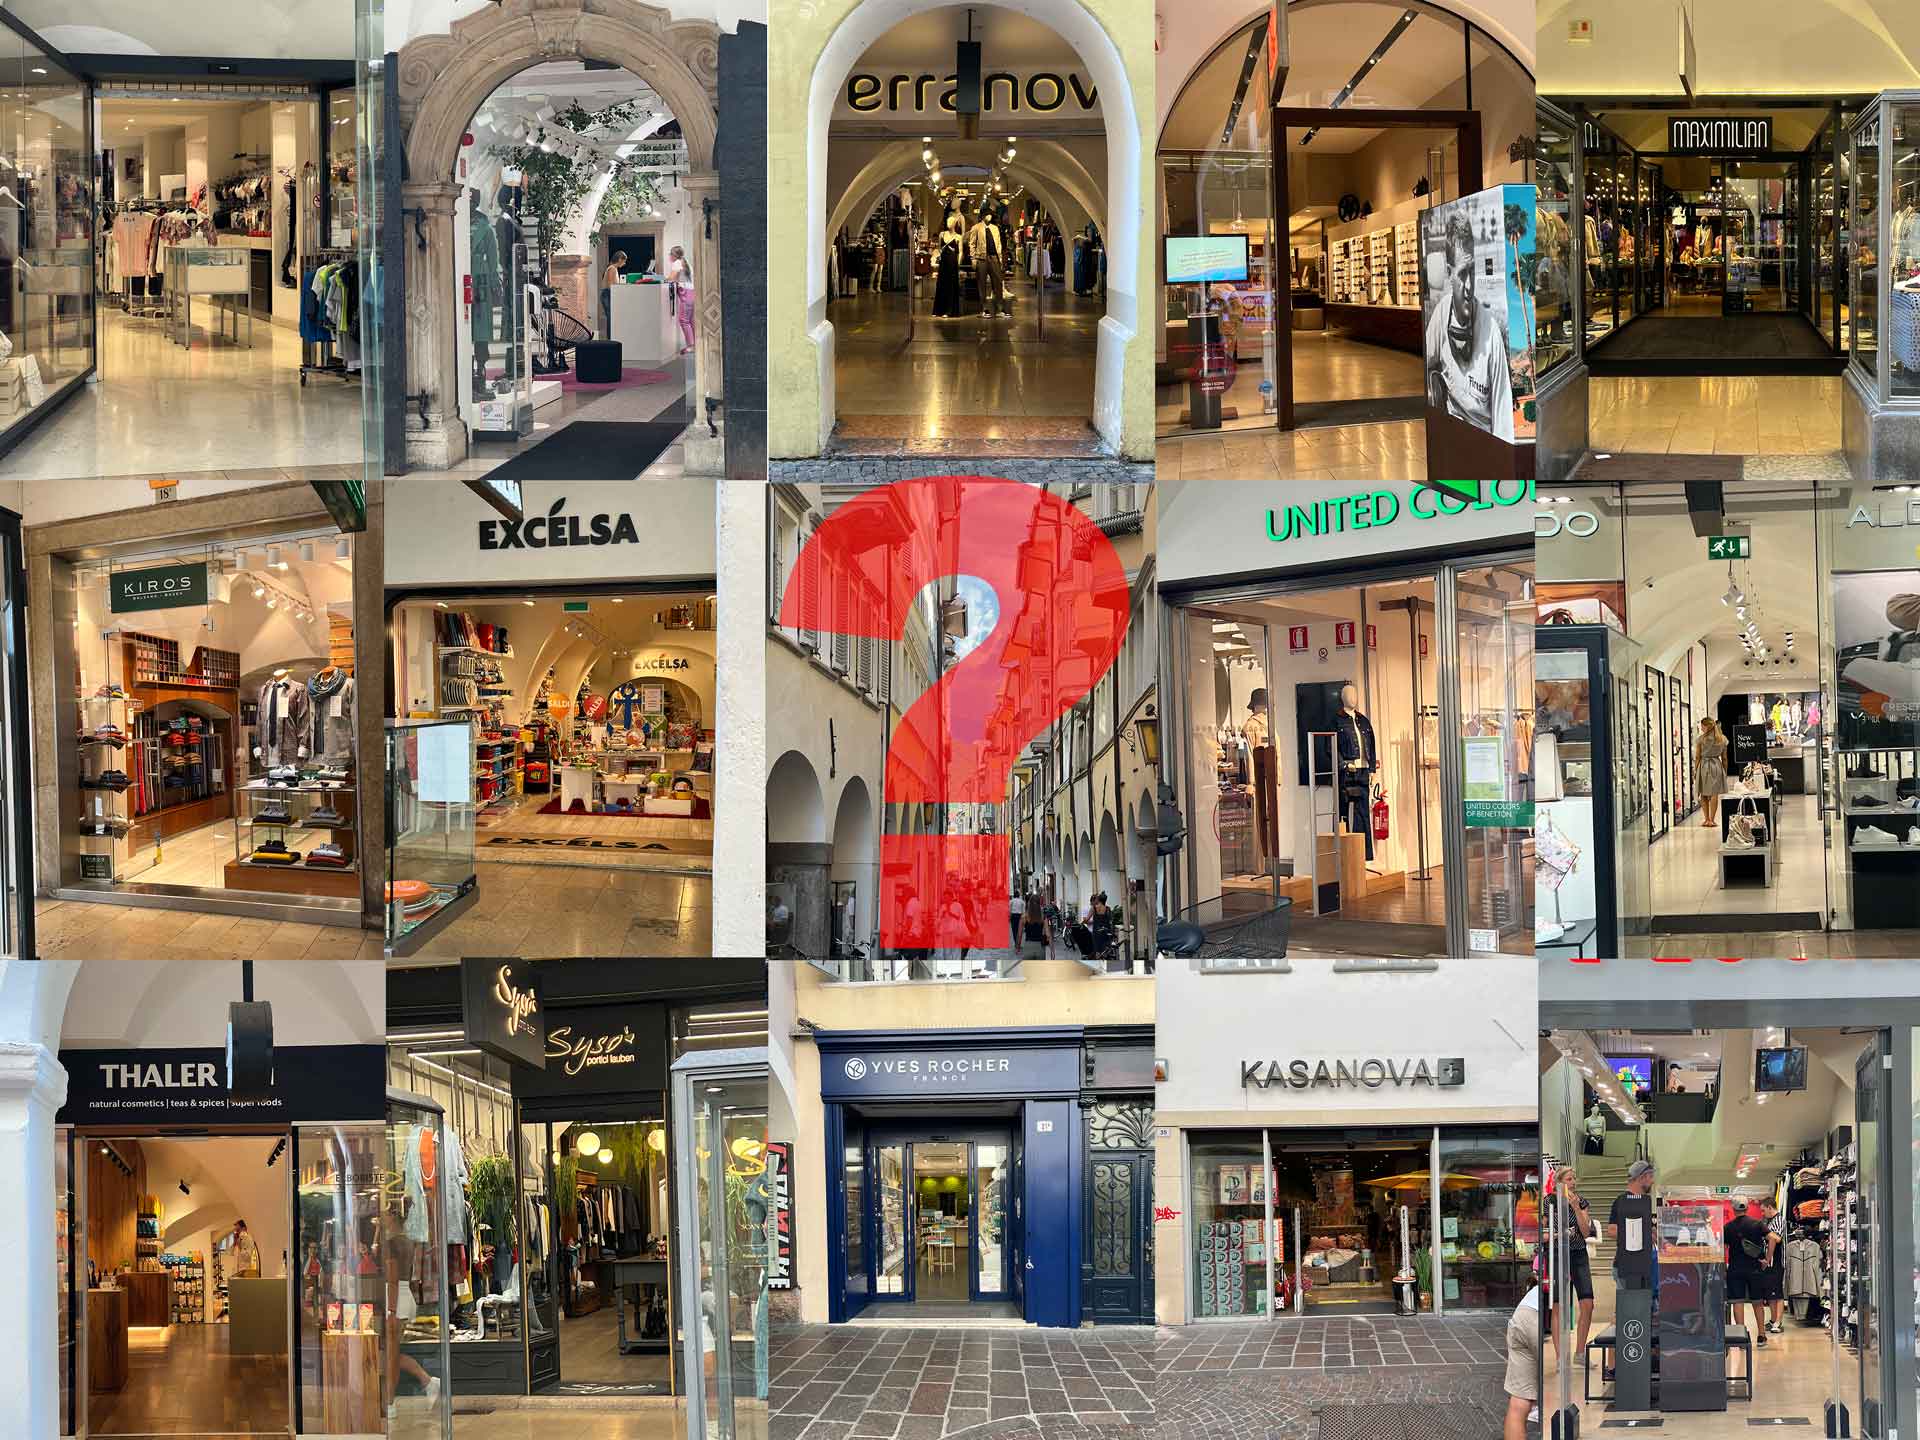 Bolzano in centro negozi con porte aperte e aria condizionata accesa